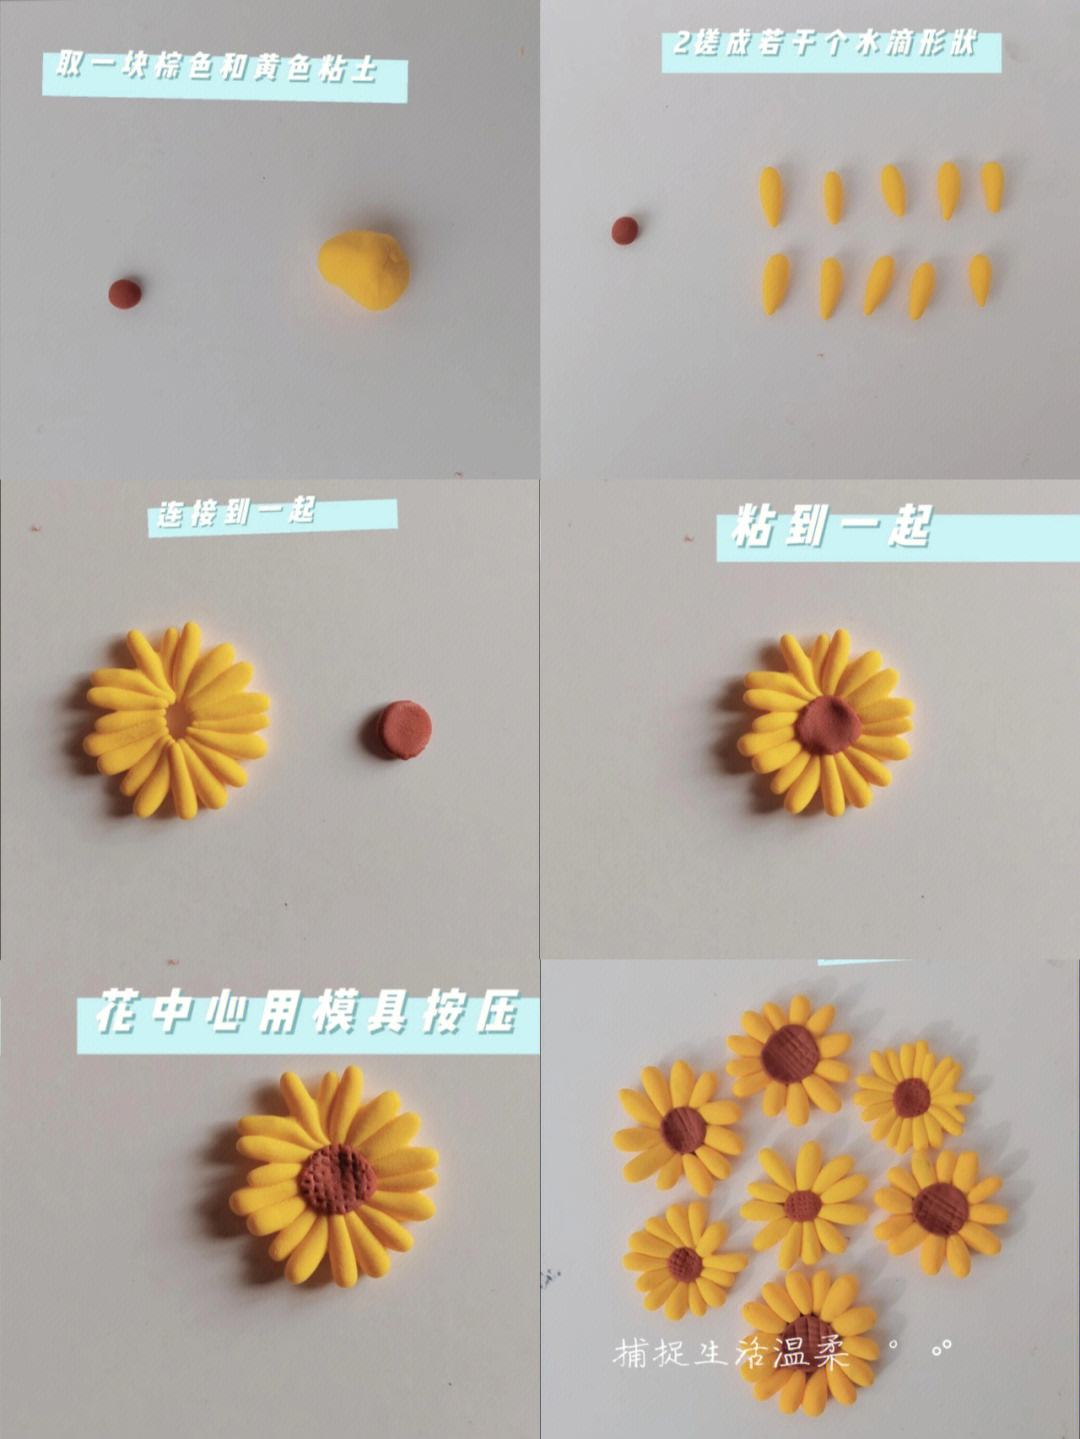 太空泥向日葵制作教程图片